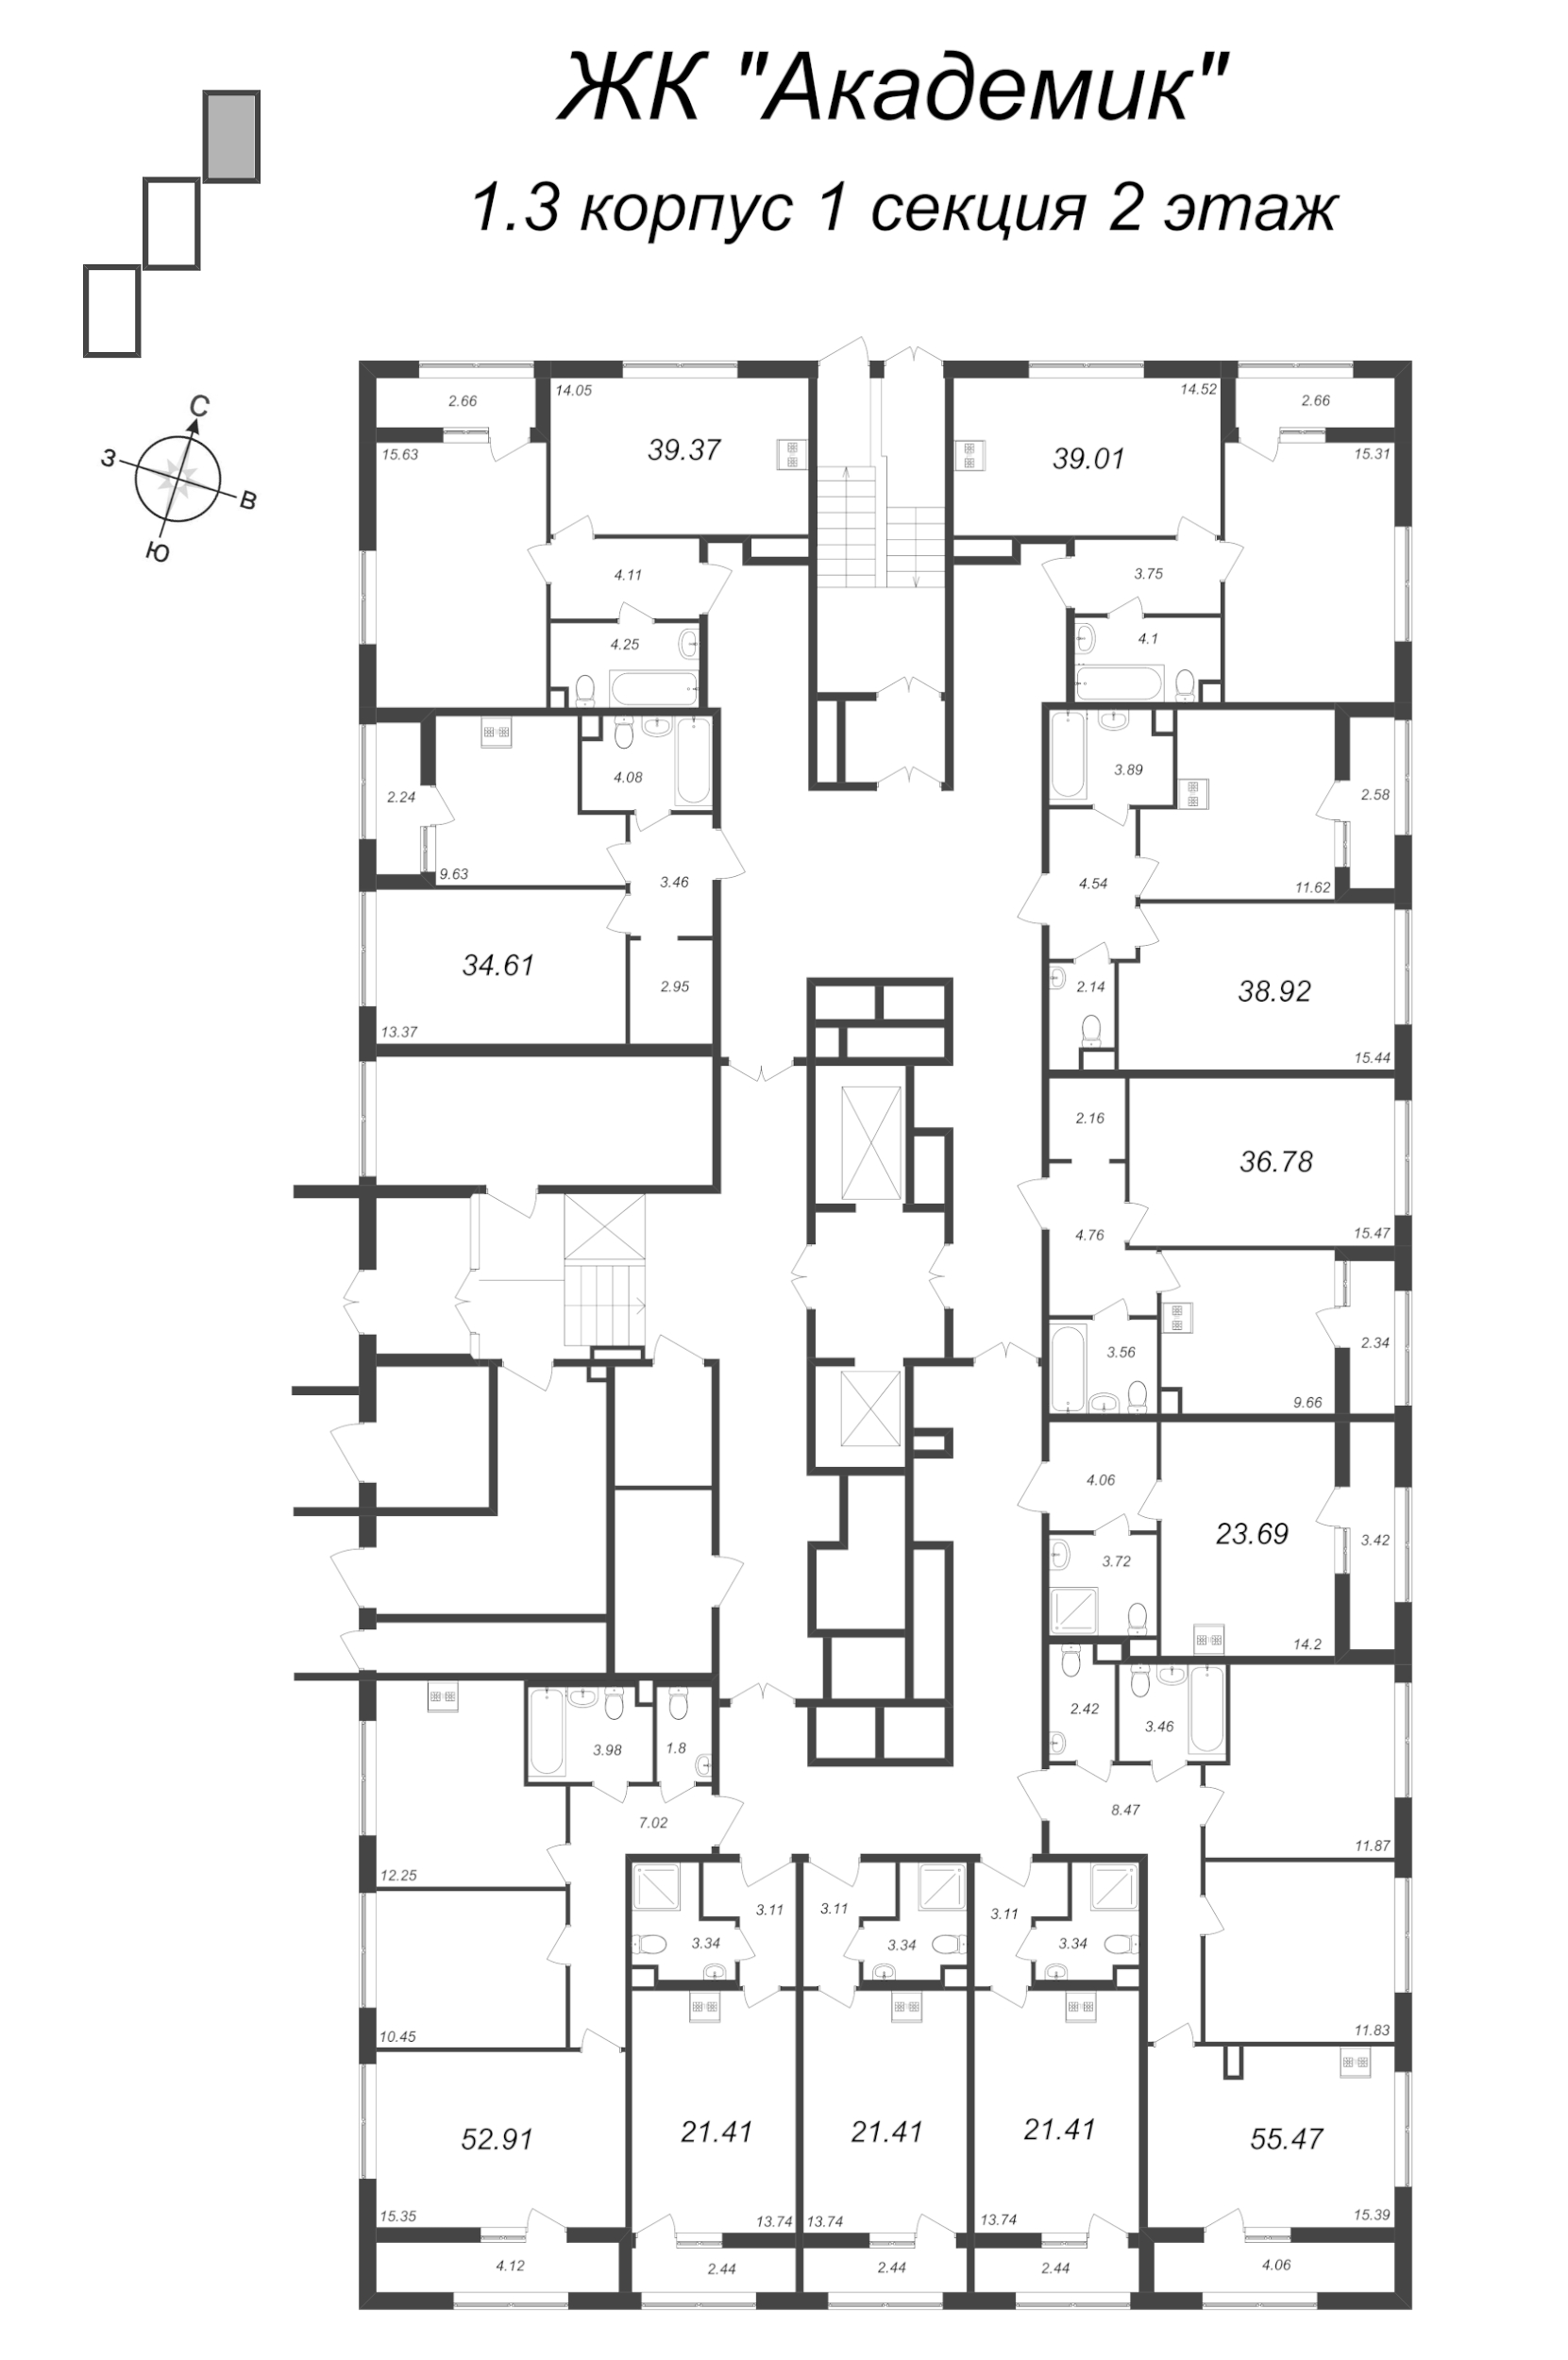 3-комнатная (Евро) квартира, 55.47 м² в ЖК "Академик" - планировка этажа